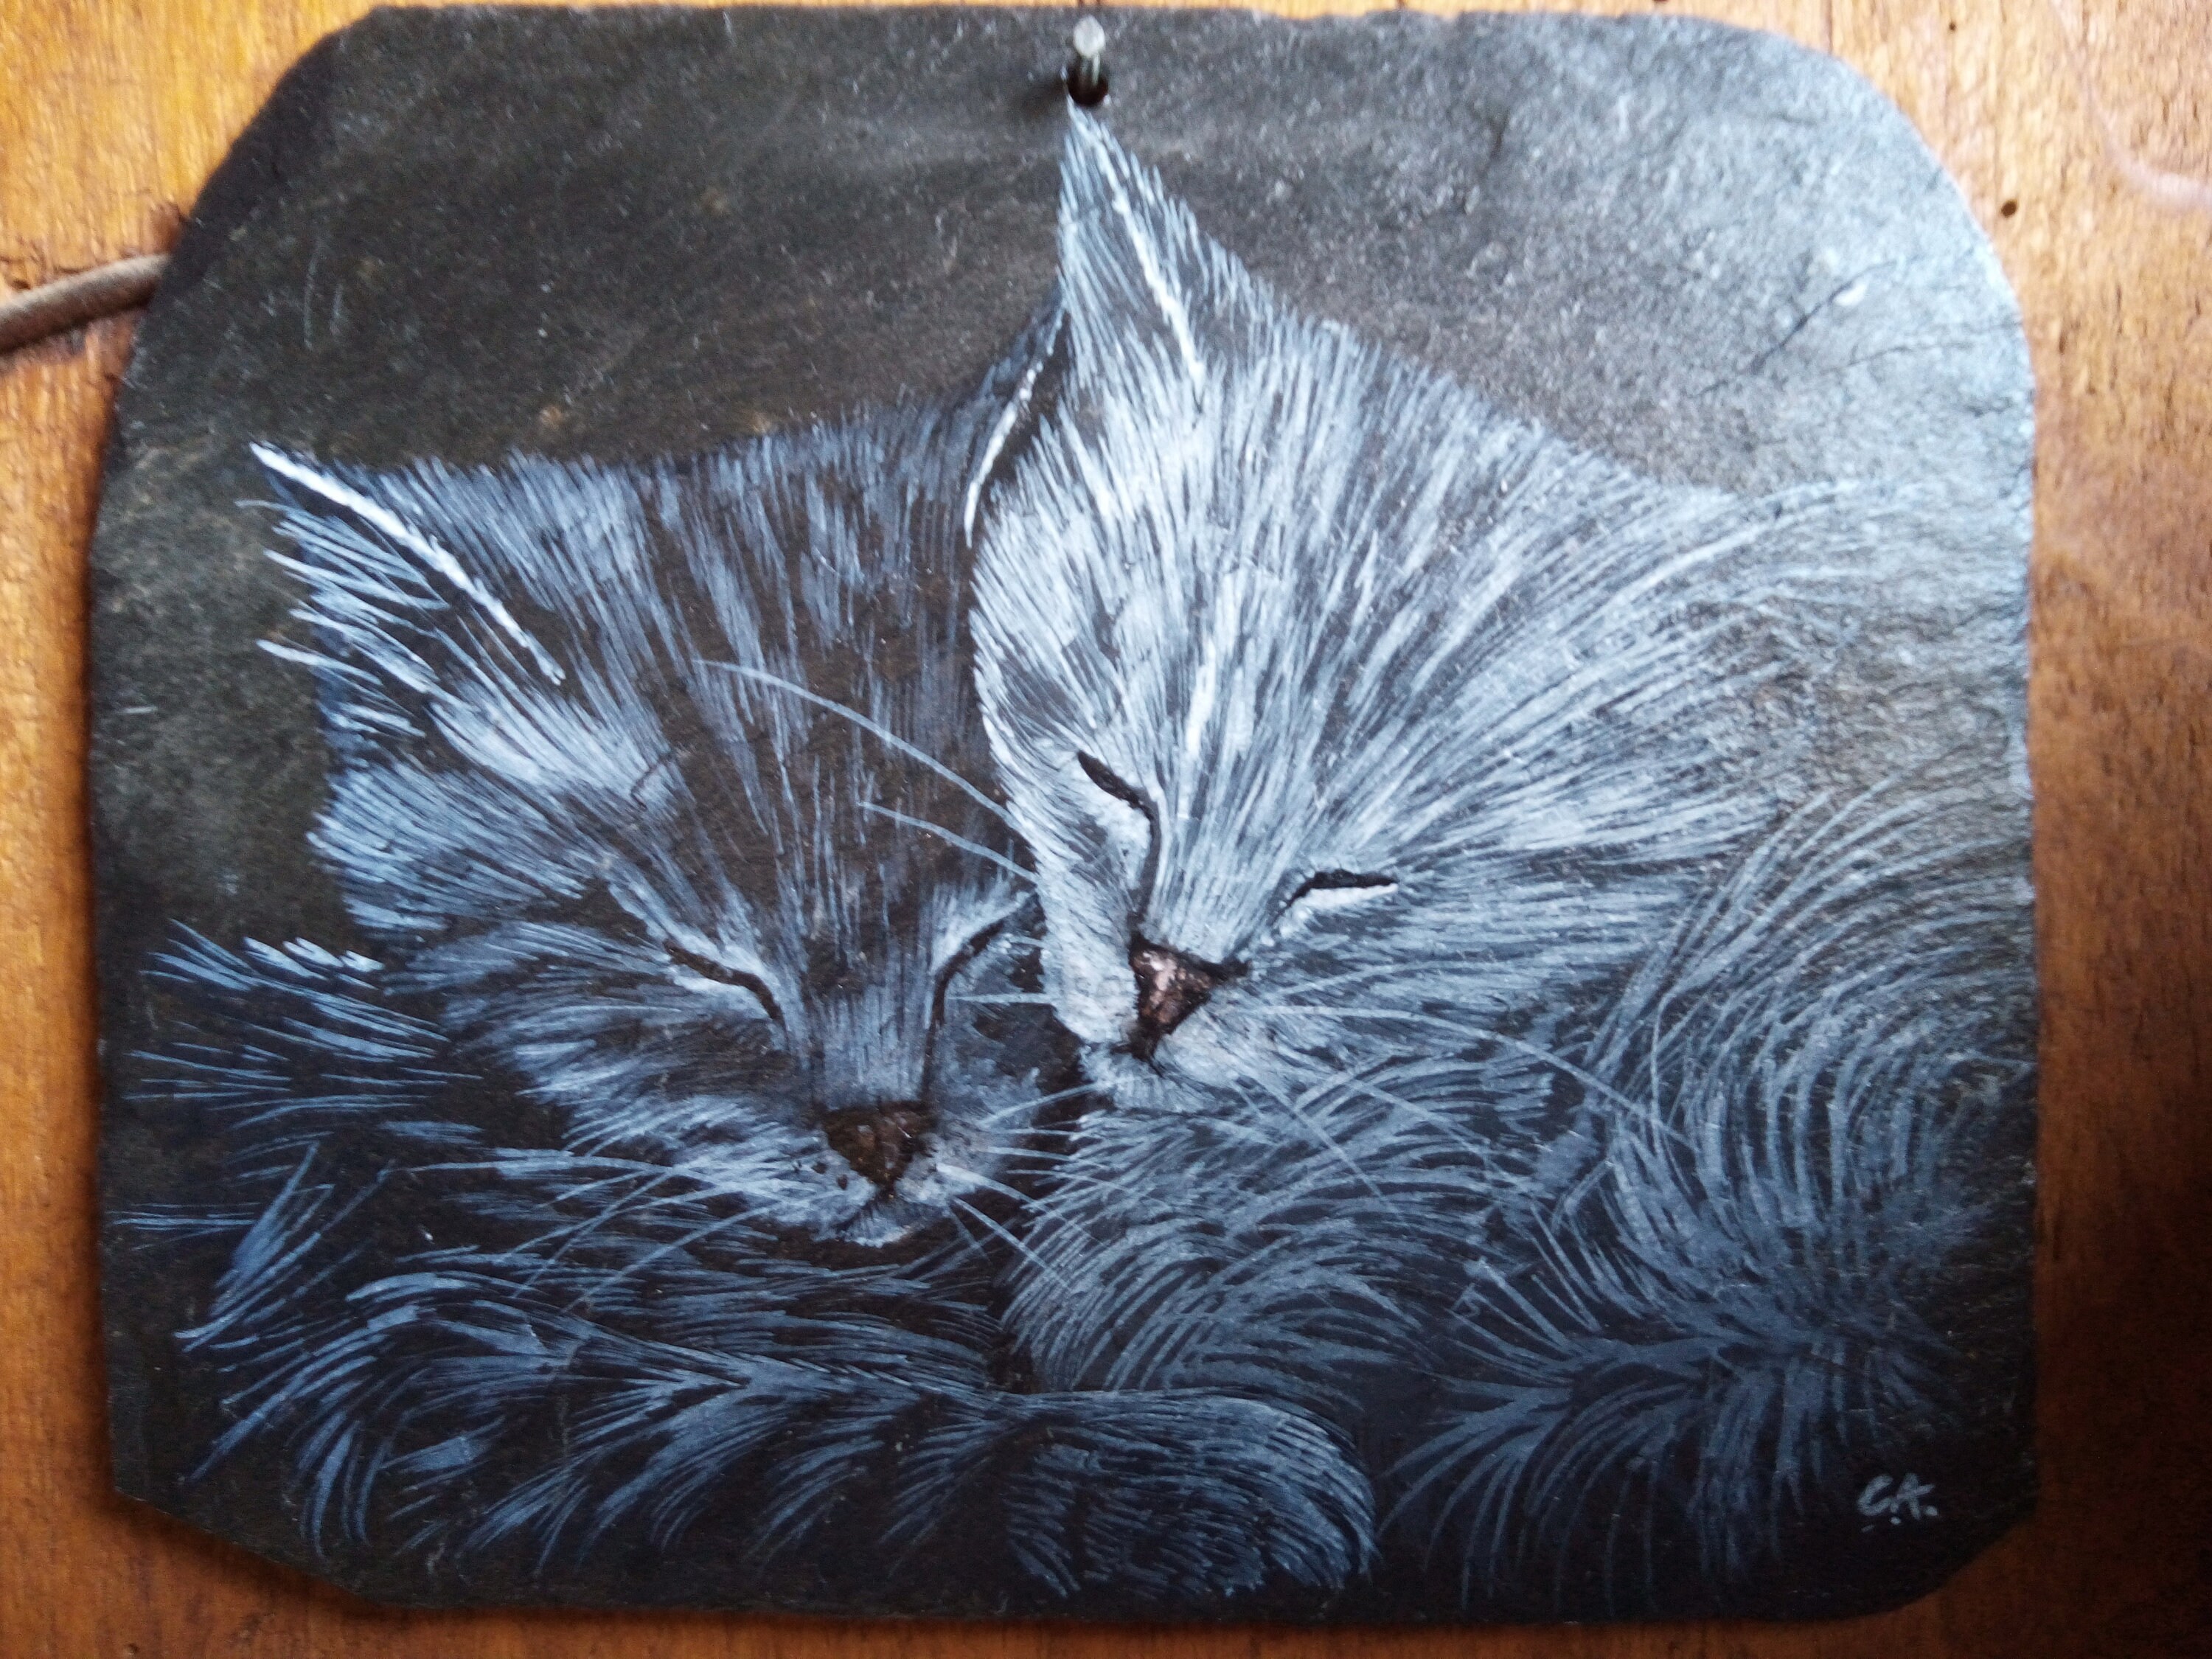  Cat  acrylic paint  on slate Etsy